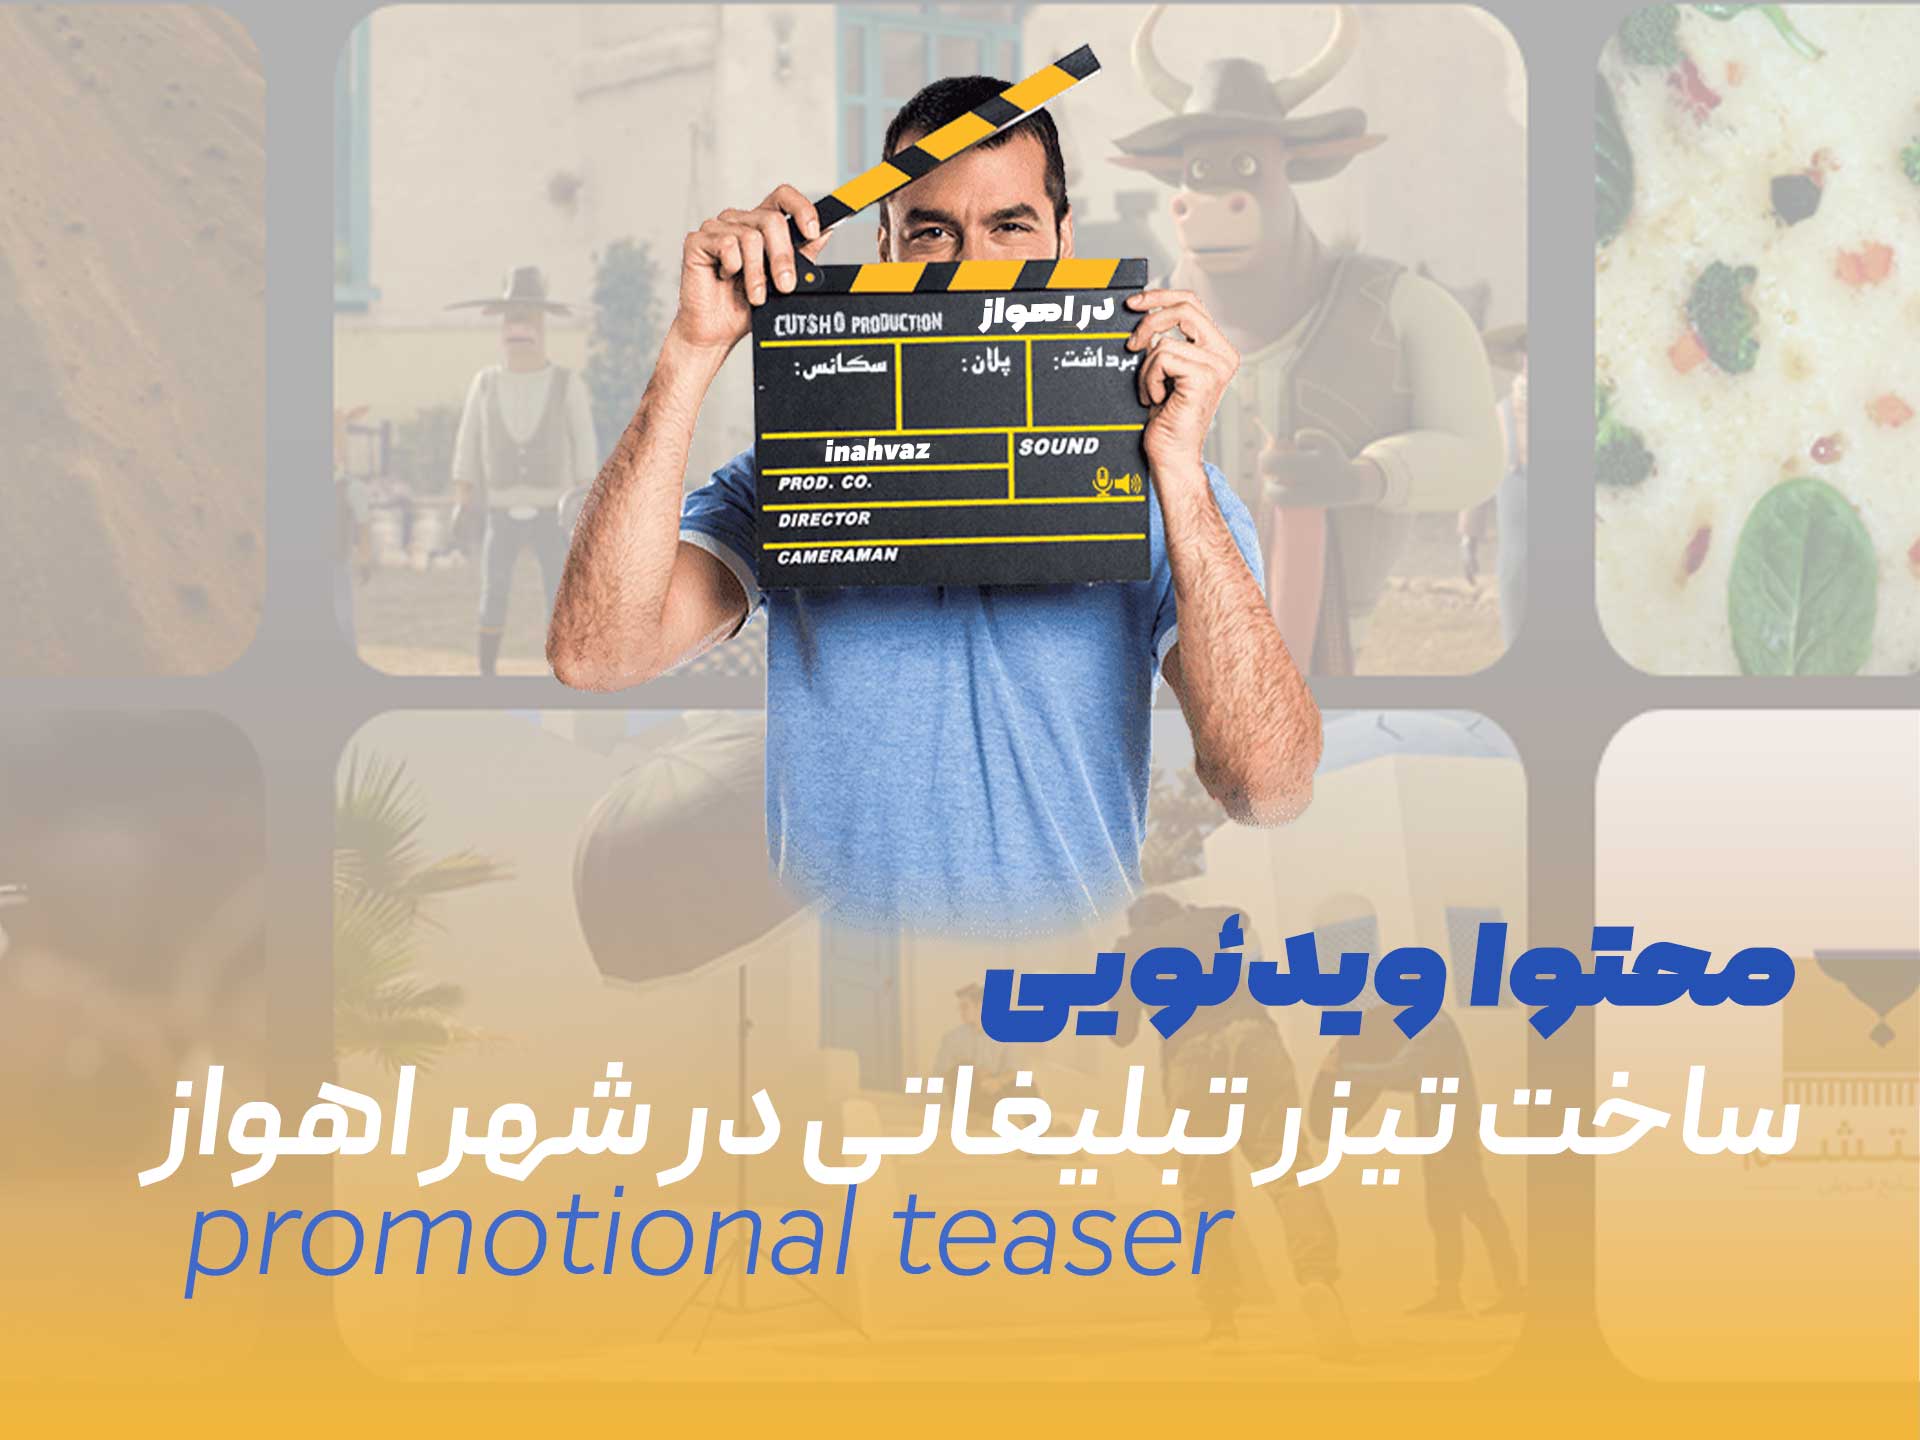 محتوا ویدئویی اهواز - ساخت تیزر تبلیغاتی در شهر اهواز - ویدئو تبلیغاتی